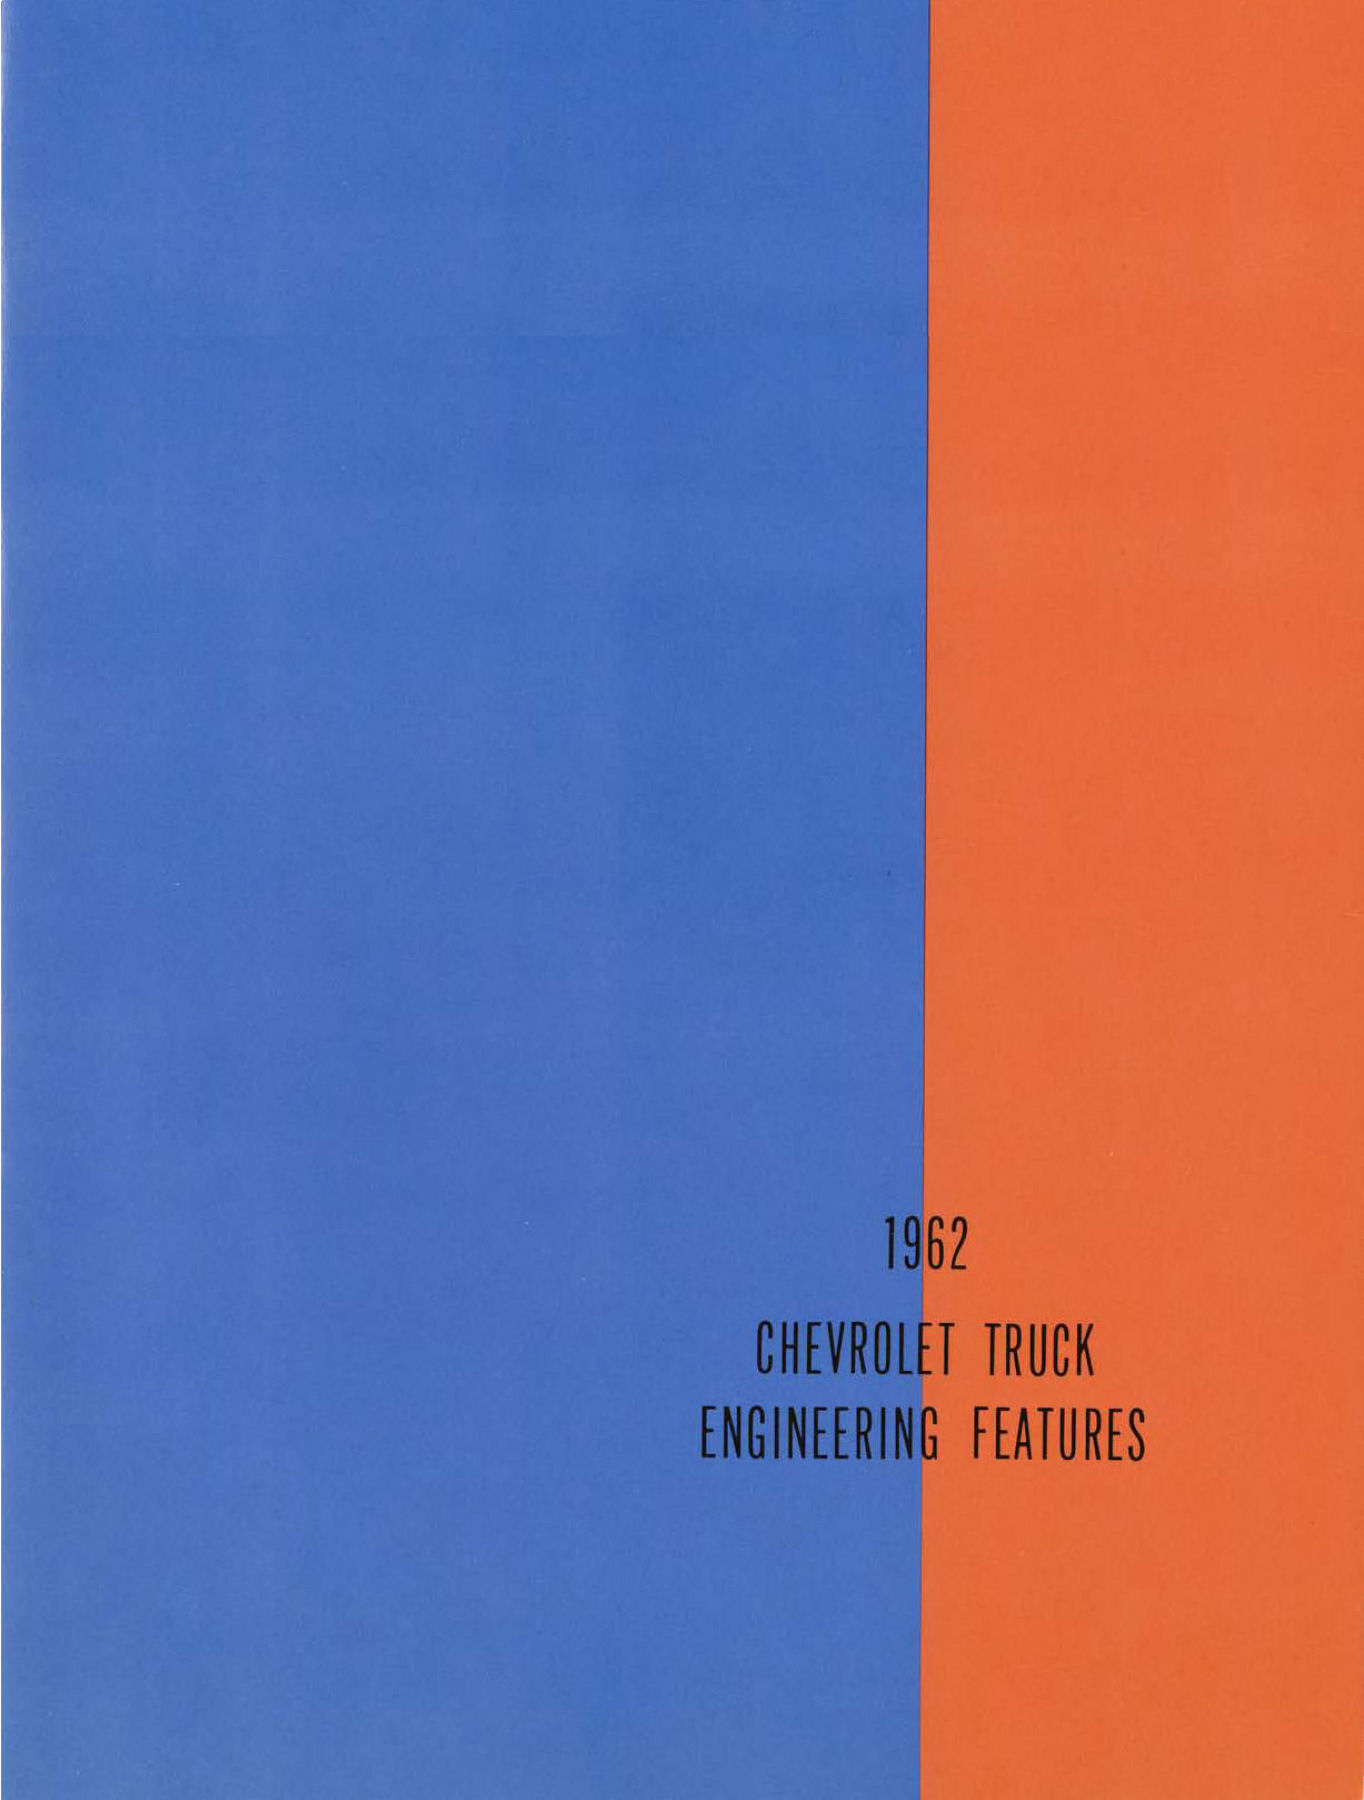 1962 Chevrolet Truck Engineering Features-00